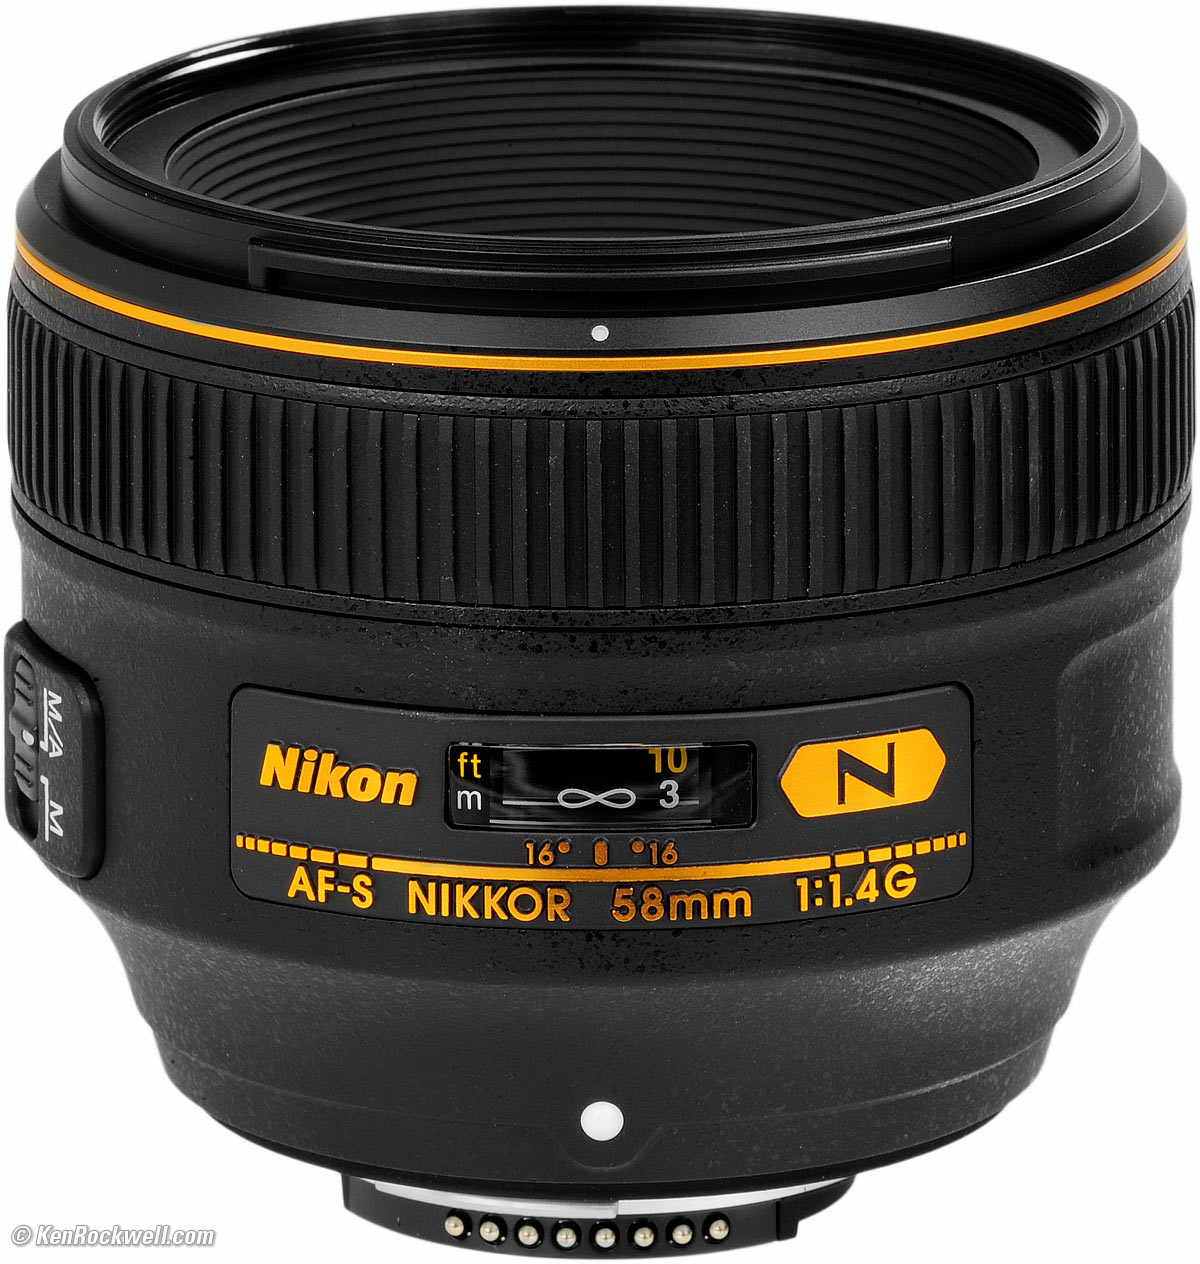 Nikon AF-S 58mm F1.4G | eclipseseal.com